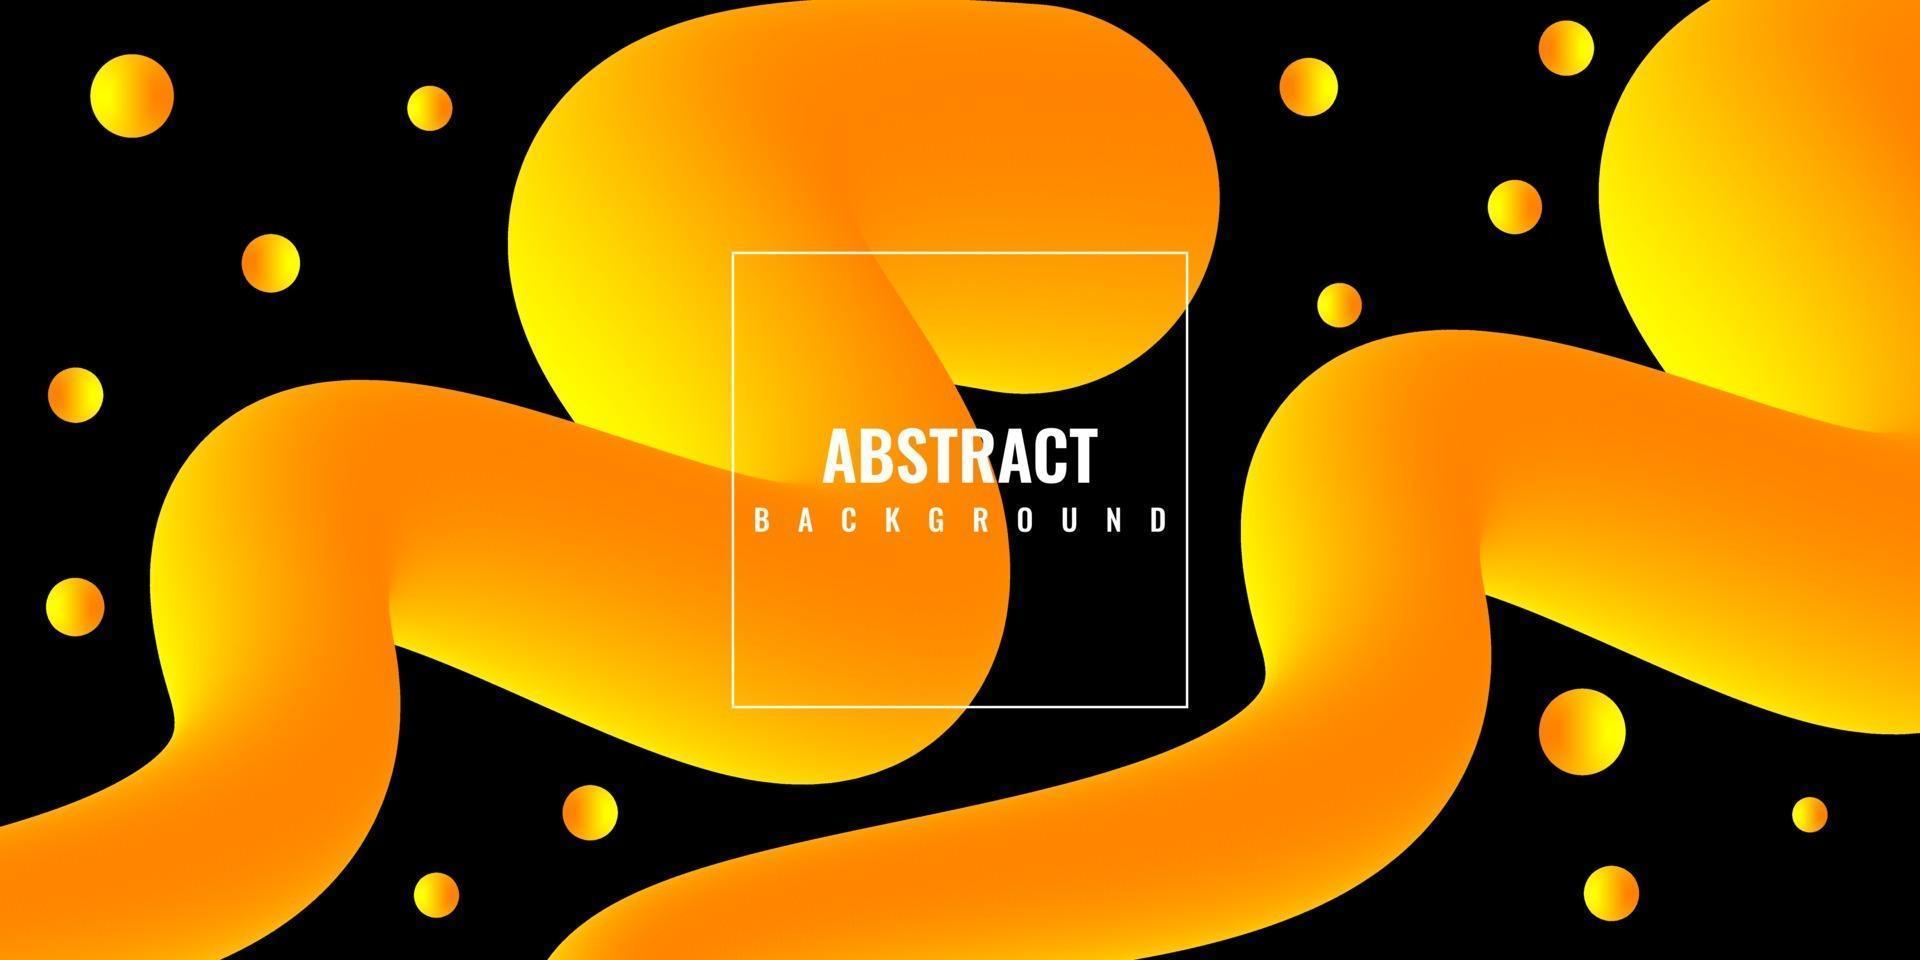 moderner abstrakter flüssiger 3d Hintergrund mit gelbem Farbverlauf vektor